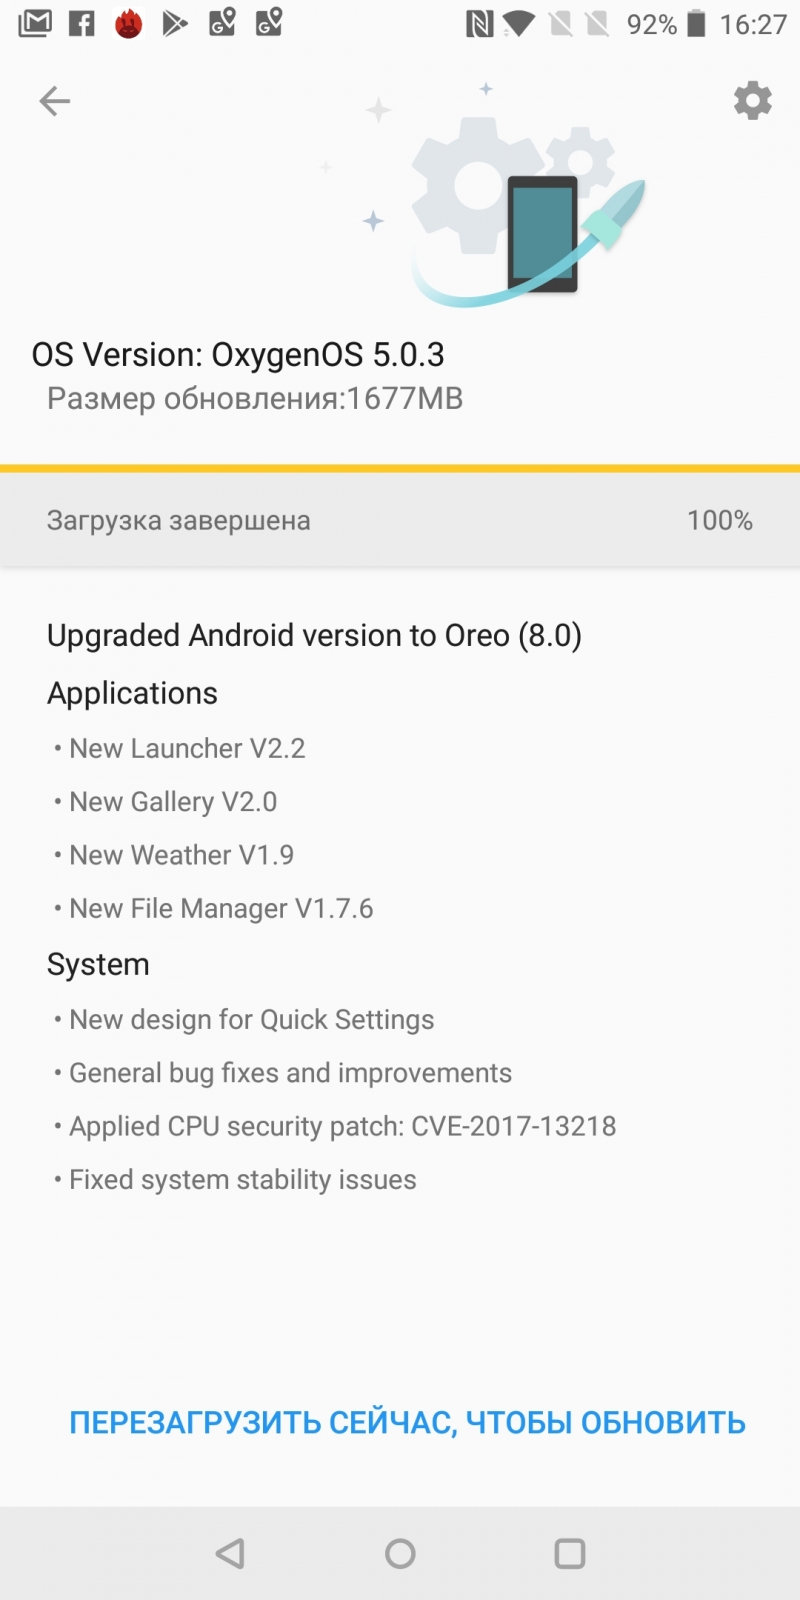  Предложение обновиться до Oxygen 5.0.3 с Android 8.0 Oreo 